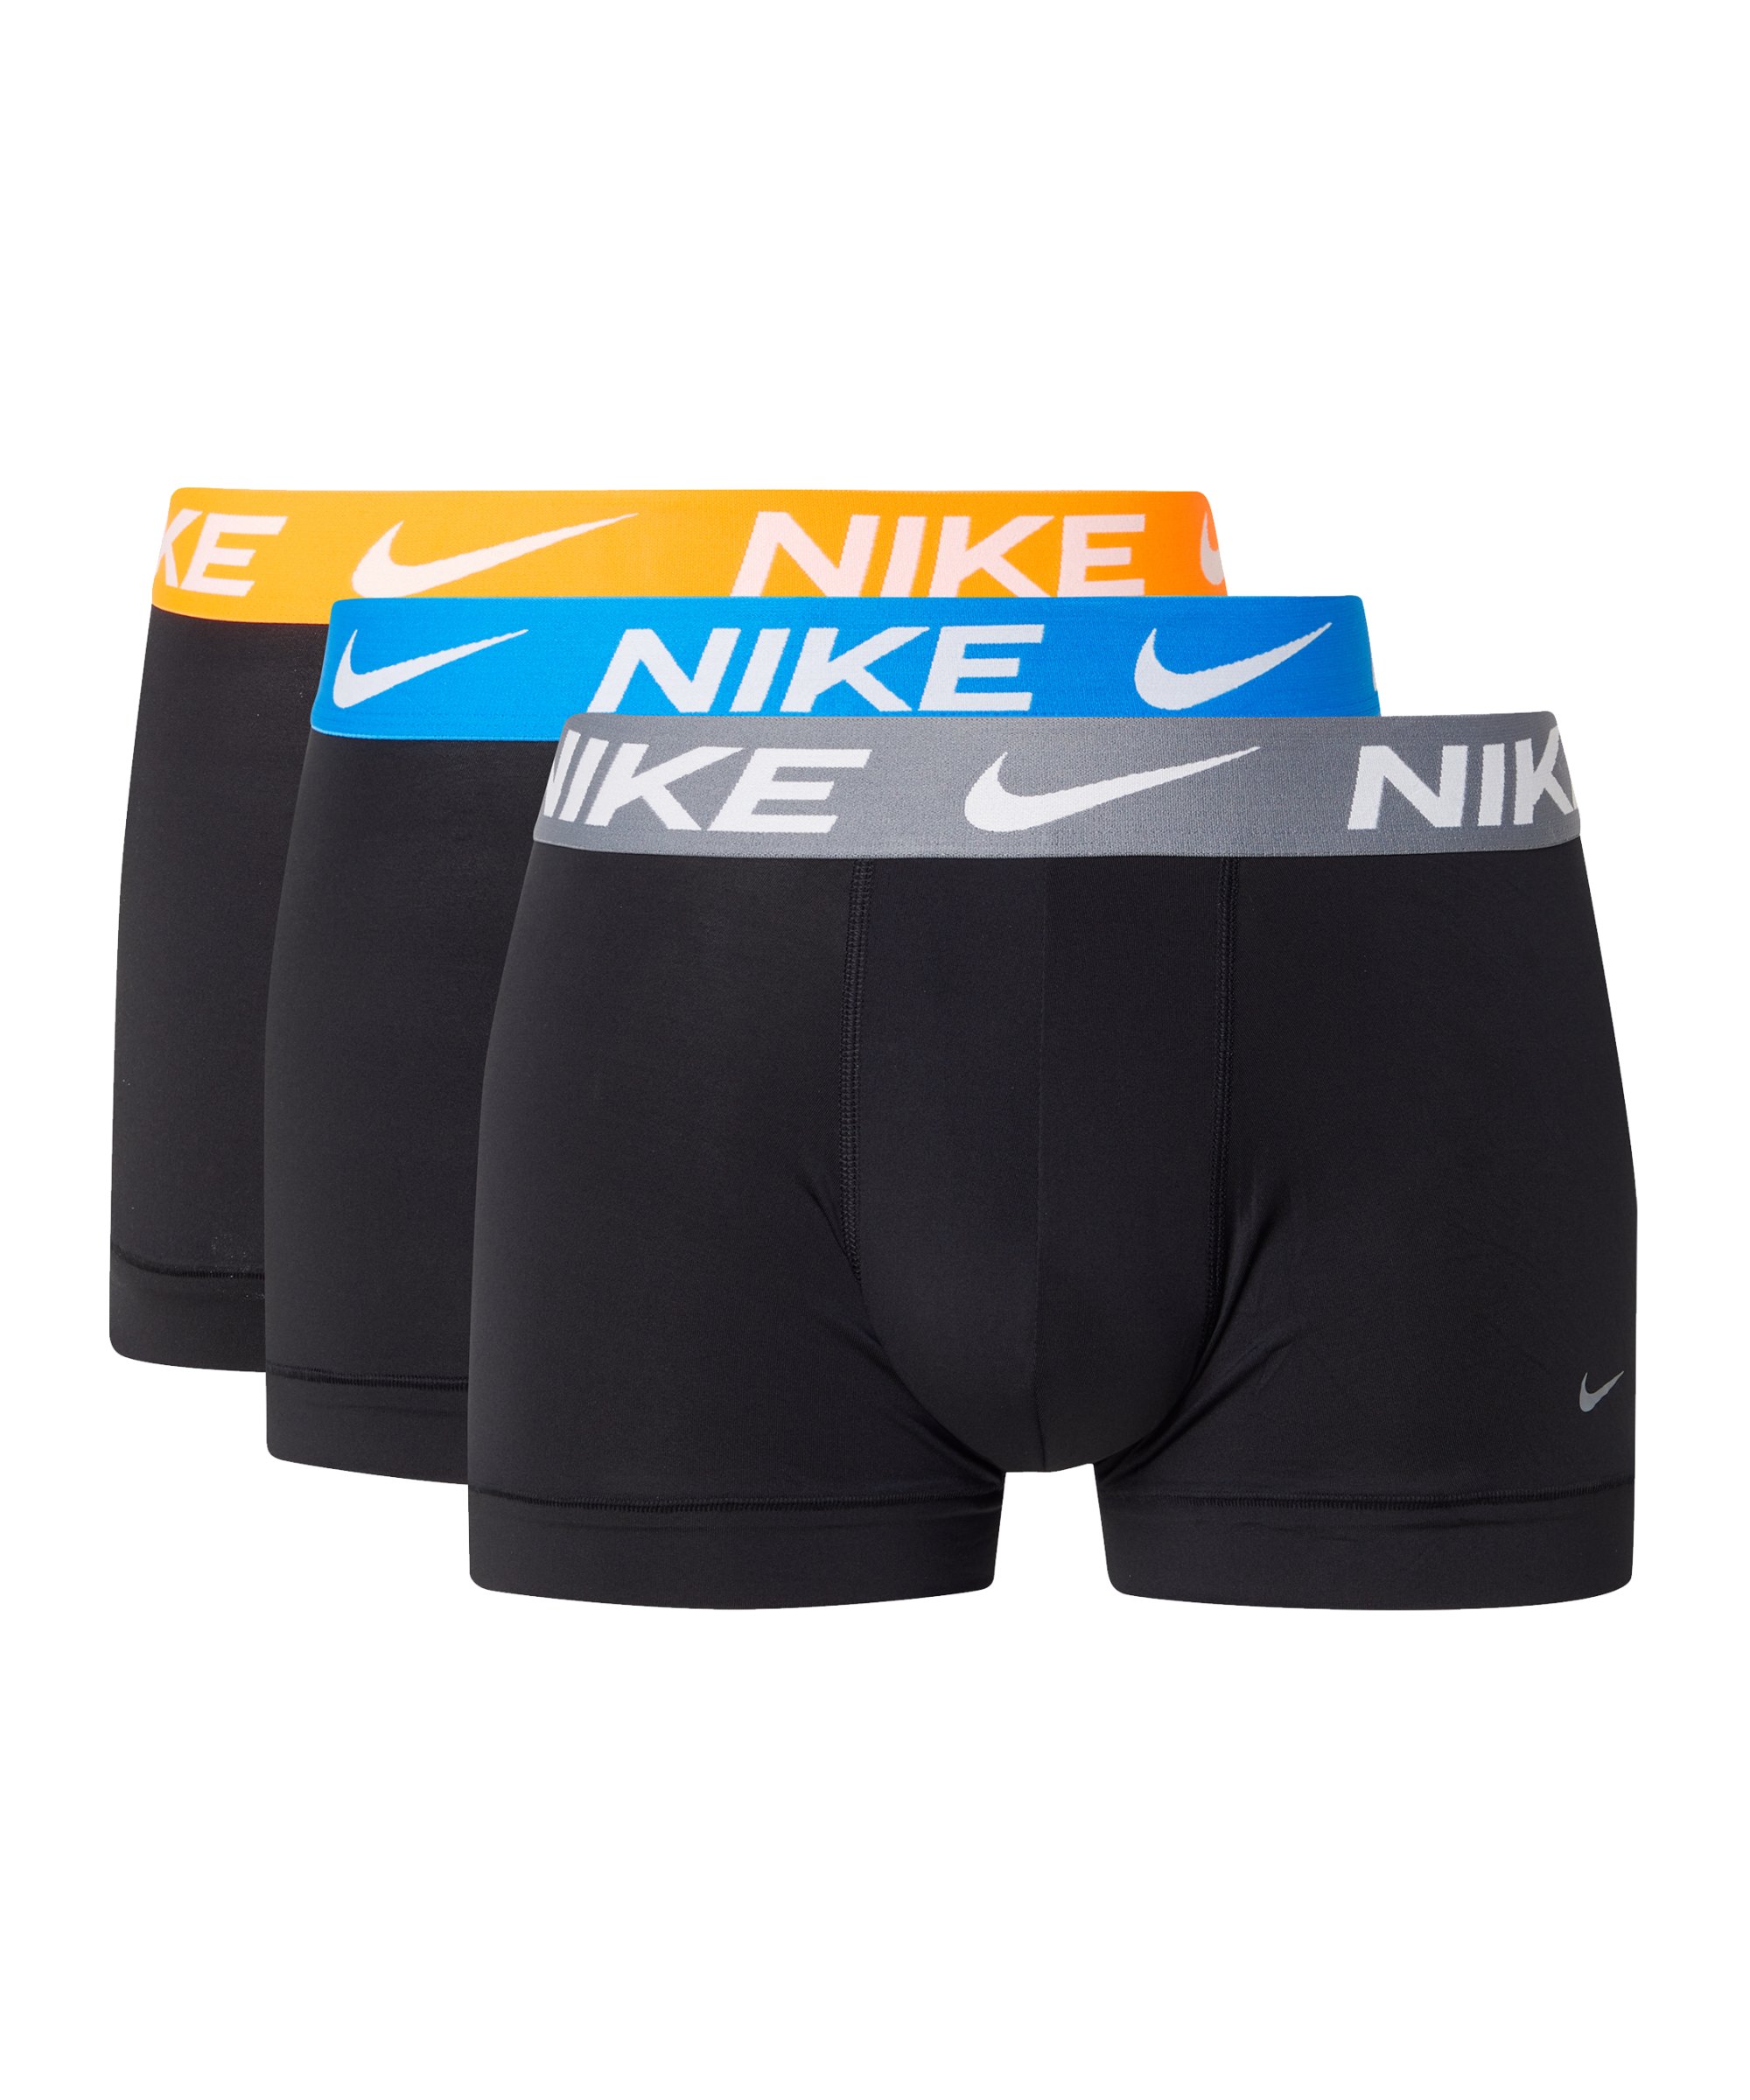 Nike Dri-Fit Micro Trunk Boxershort 3er Pack F9SN - schwarz